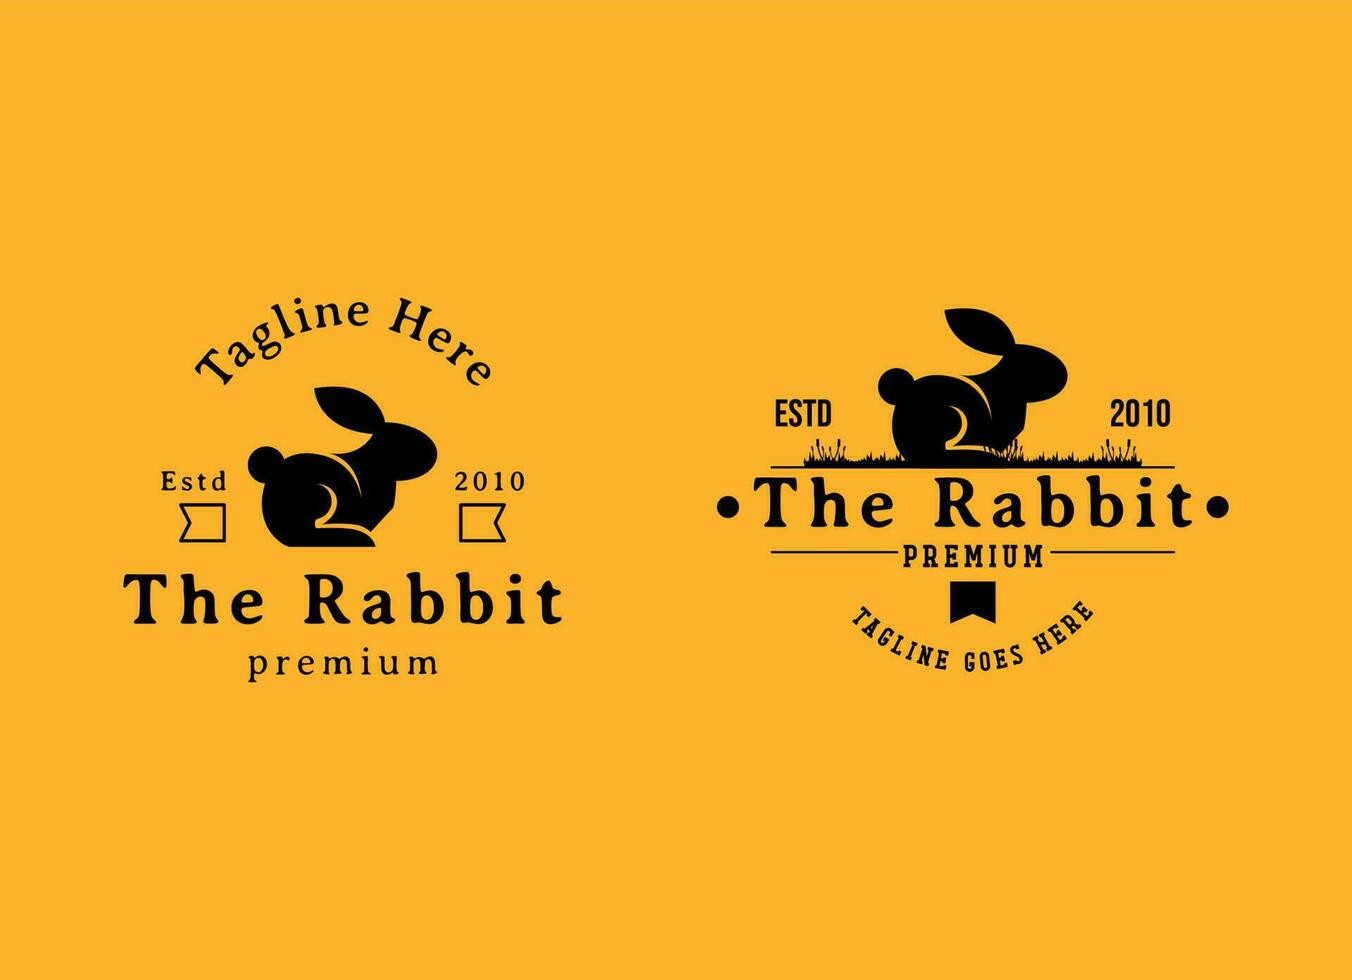 Conejo logo diseño modelo icono retro vector ilustración